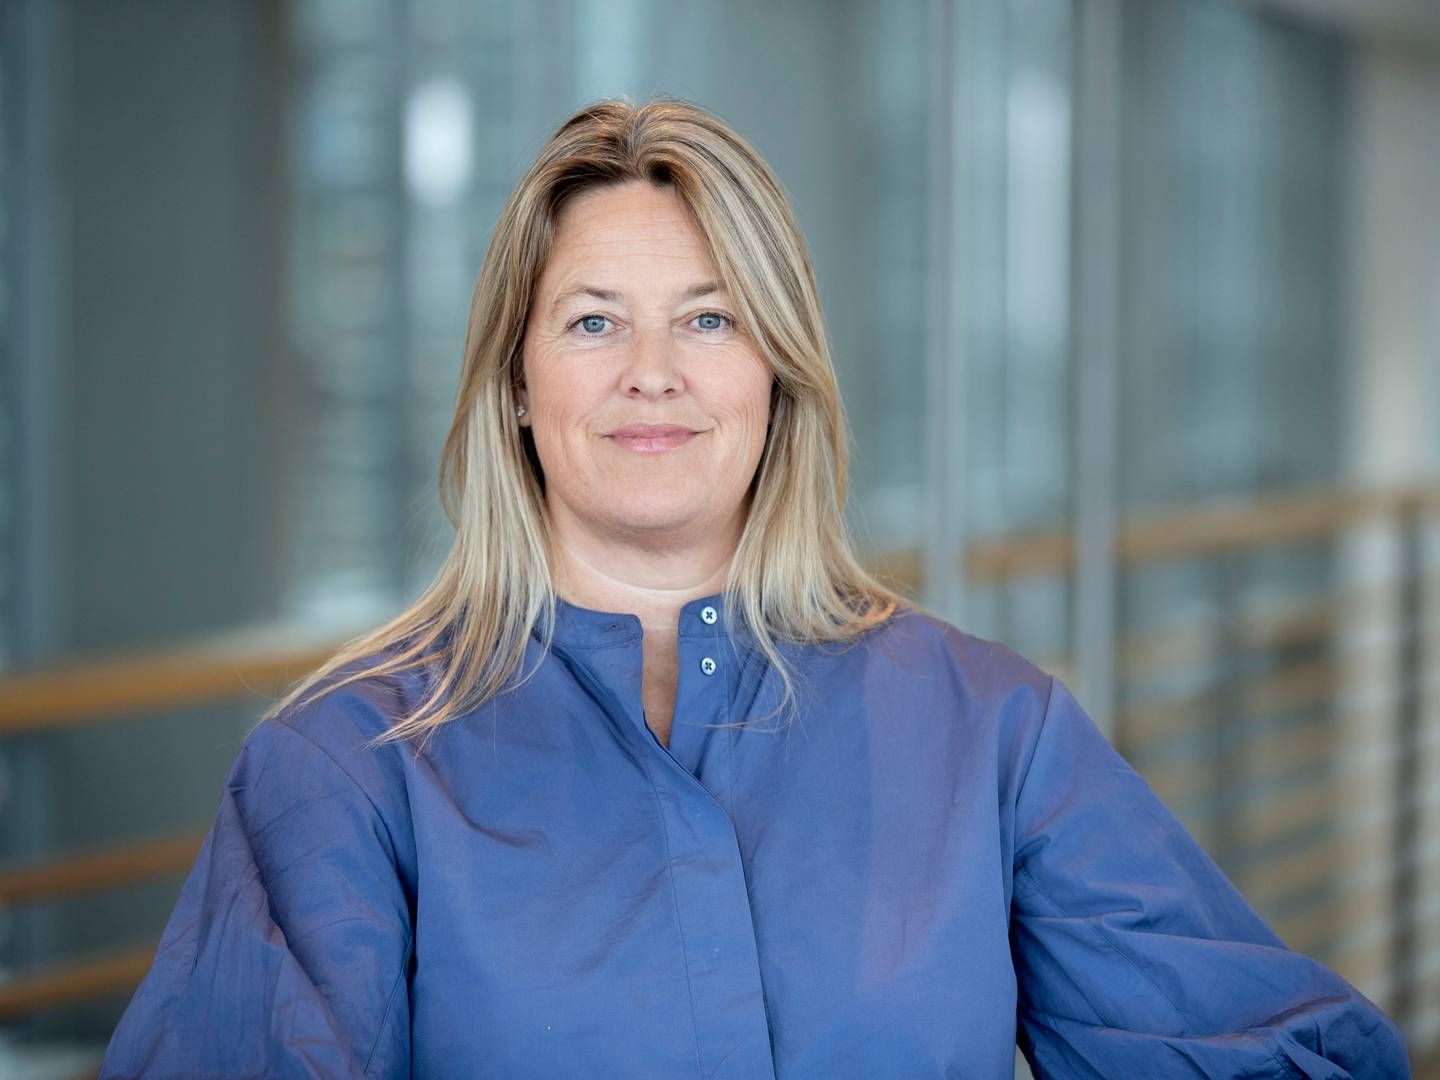 Christina Bruun Geertsen satte sig ved årsskiftet til rette som ledende partner i Kromann Reumert. | Photo: Pr